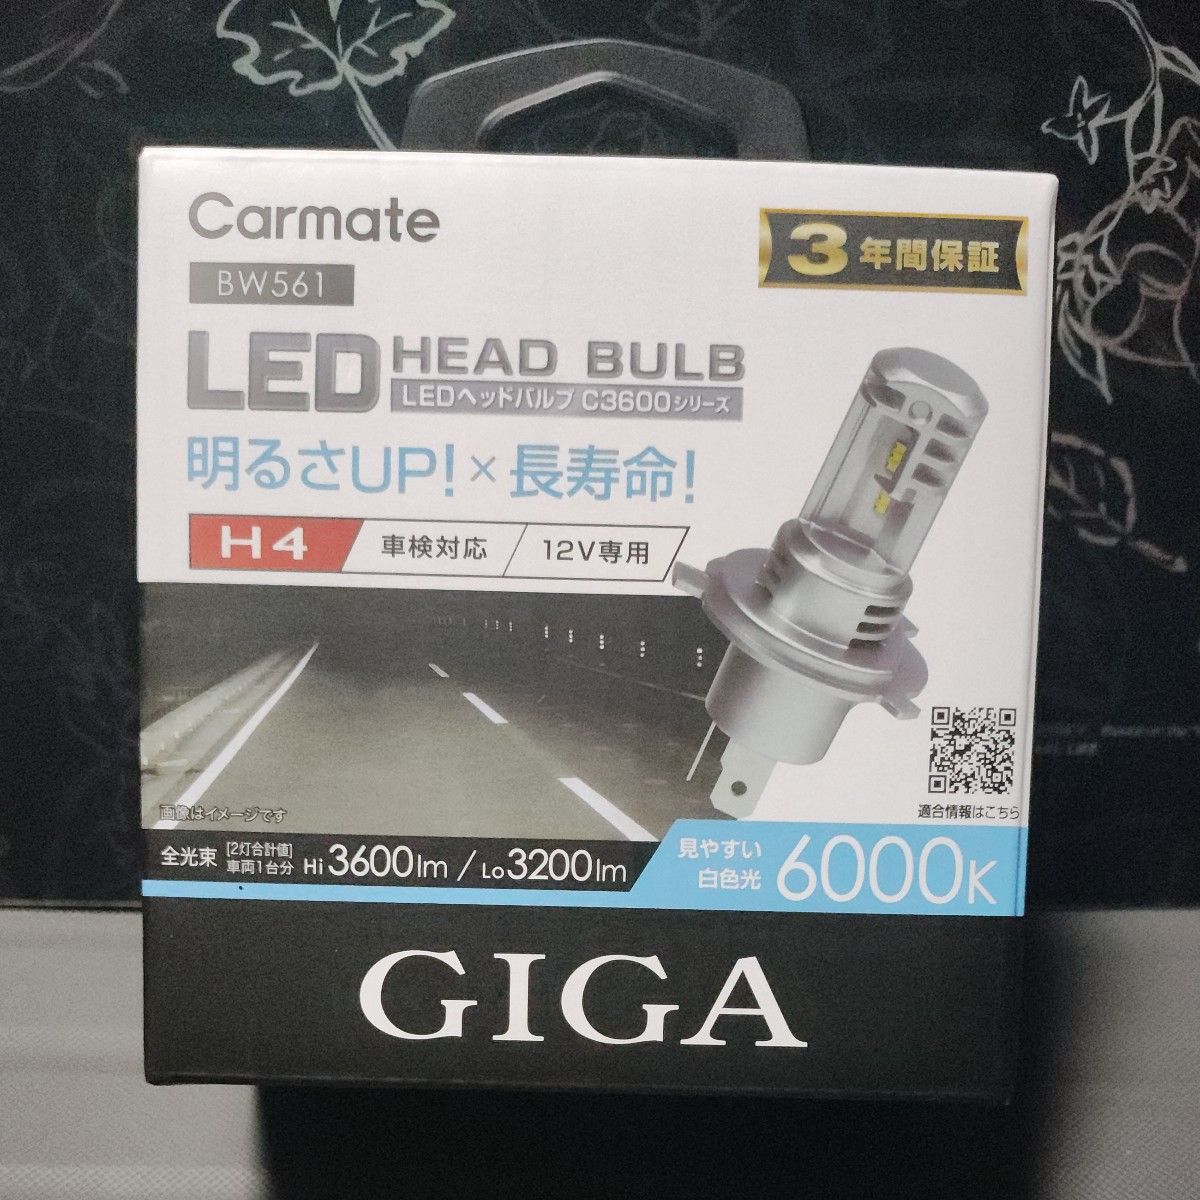 カーメイト GIGA LEDヘッドバルブ C3600 6000K H4 白色 3600lm /3200lm BW561